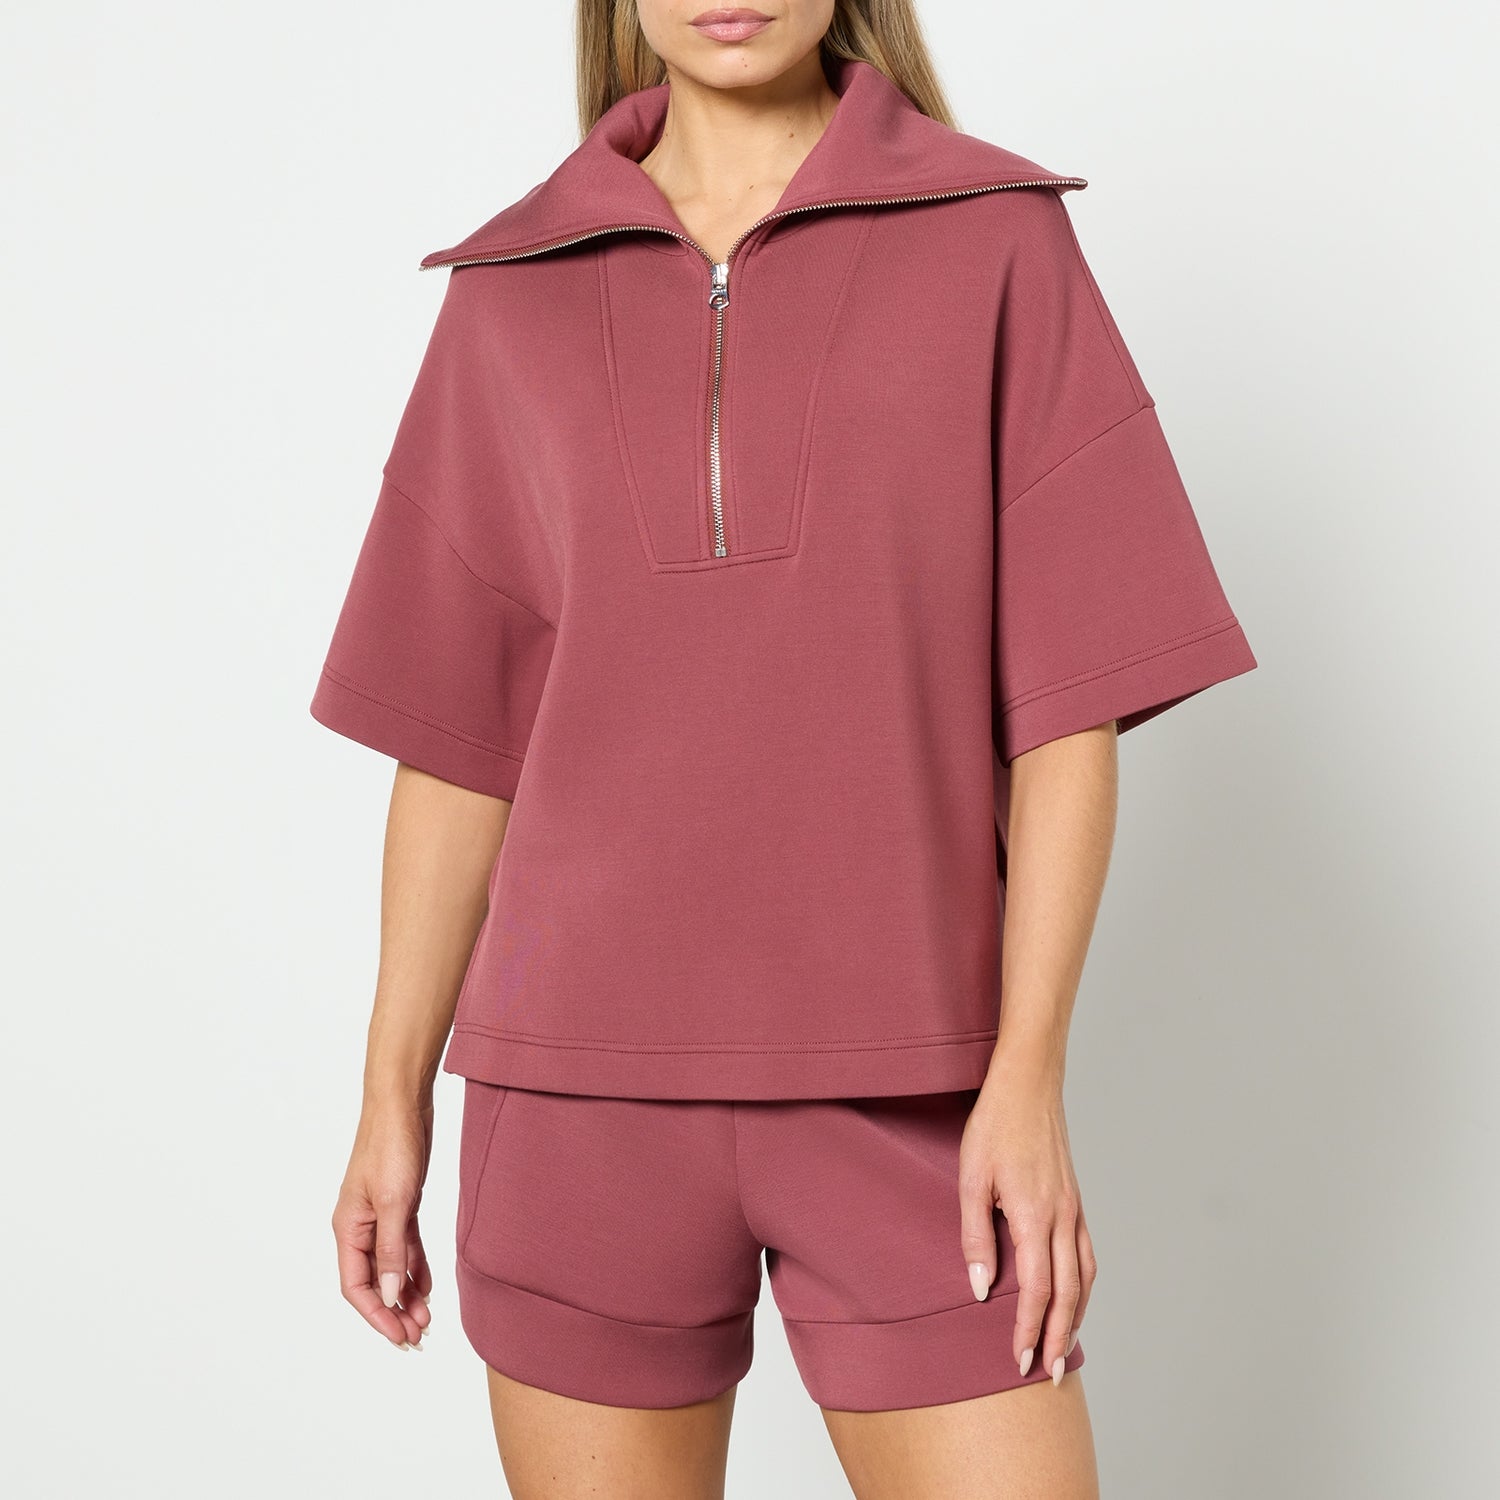 Varley Willow Short Sleeve Half Zip Jersey Sweatshirt - XS